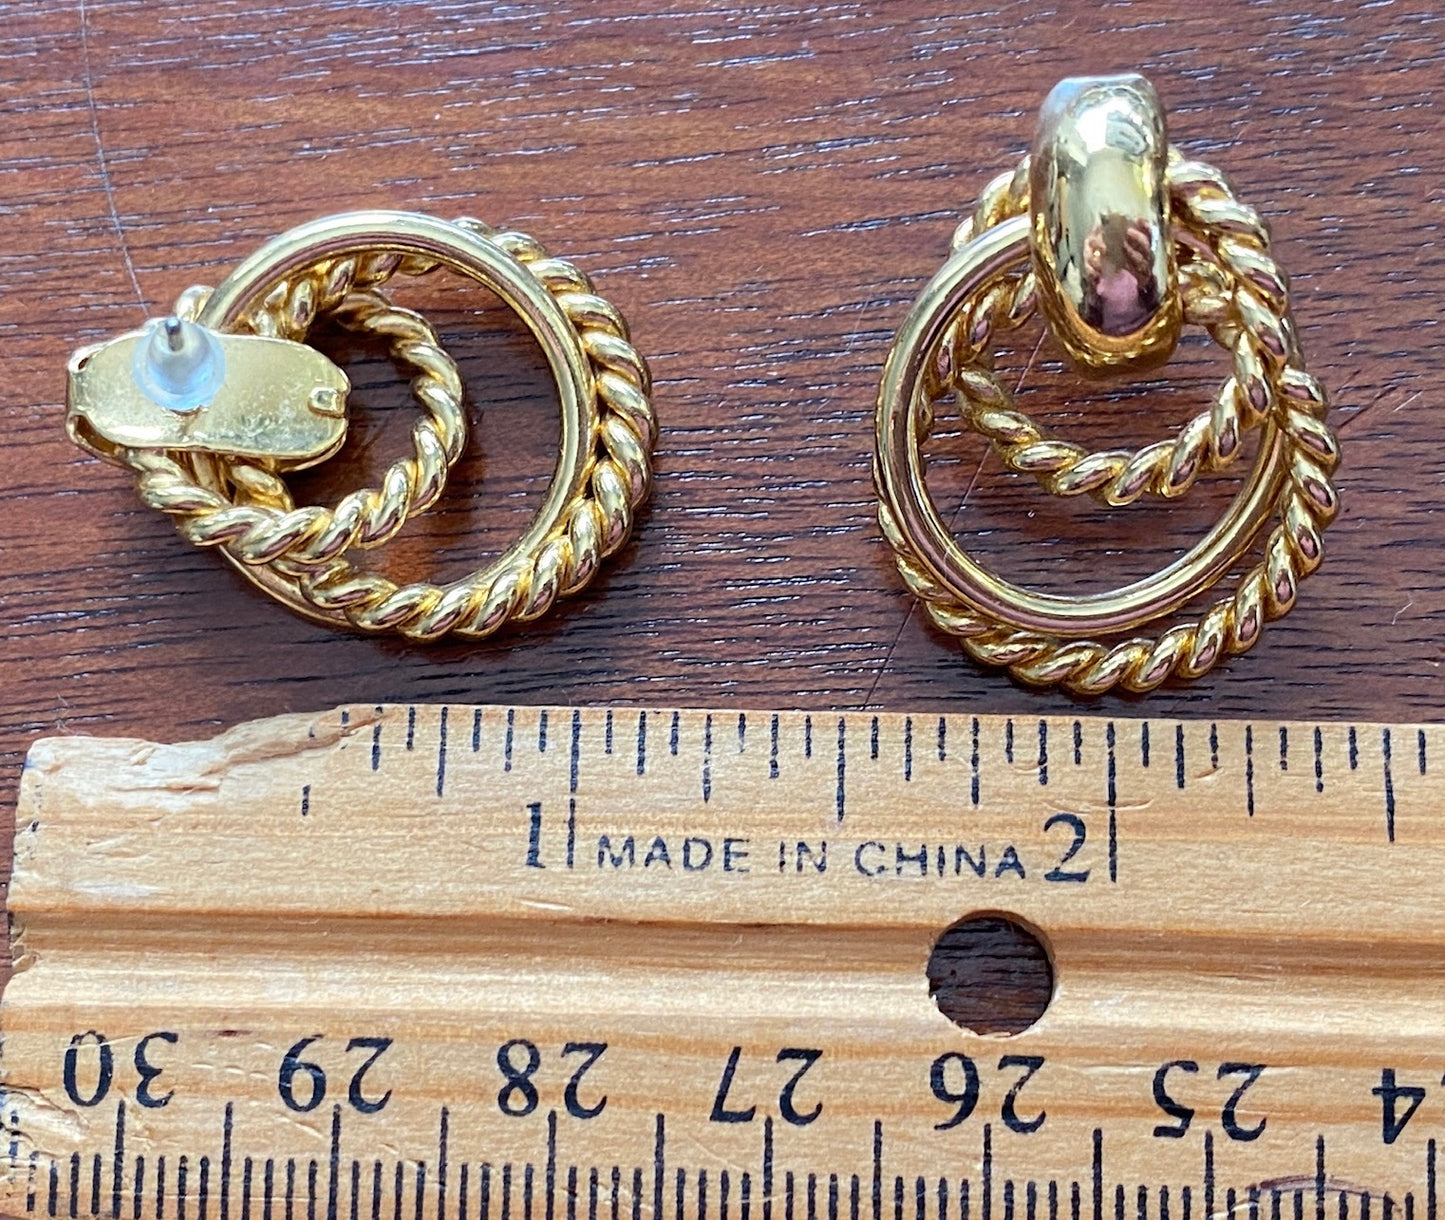 Vintage Gold Tone 80's Rope Twist Drop Pierced Earrings